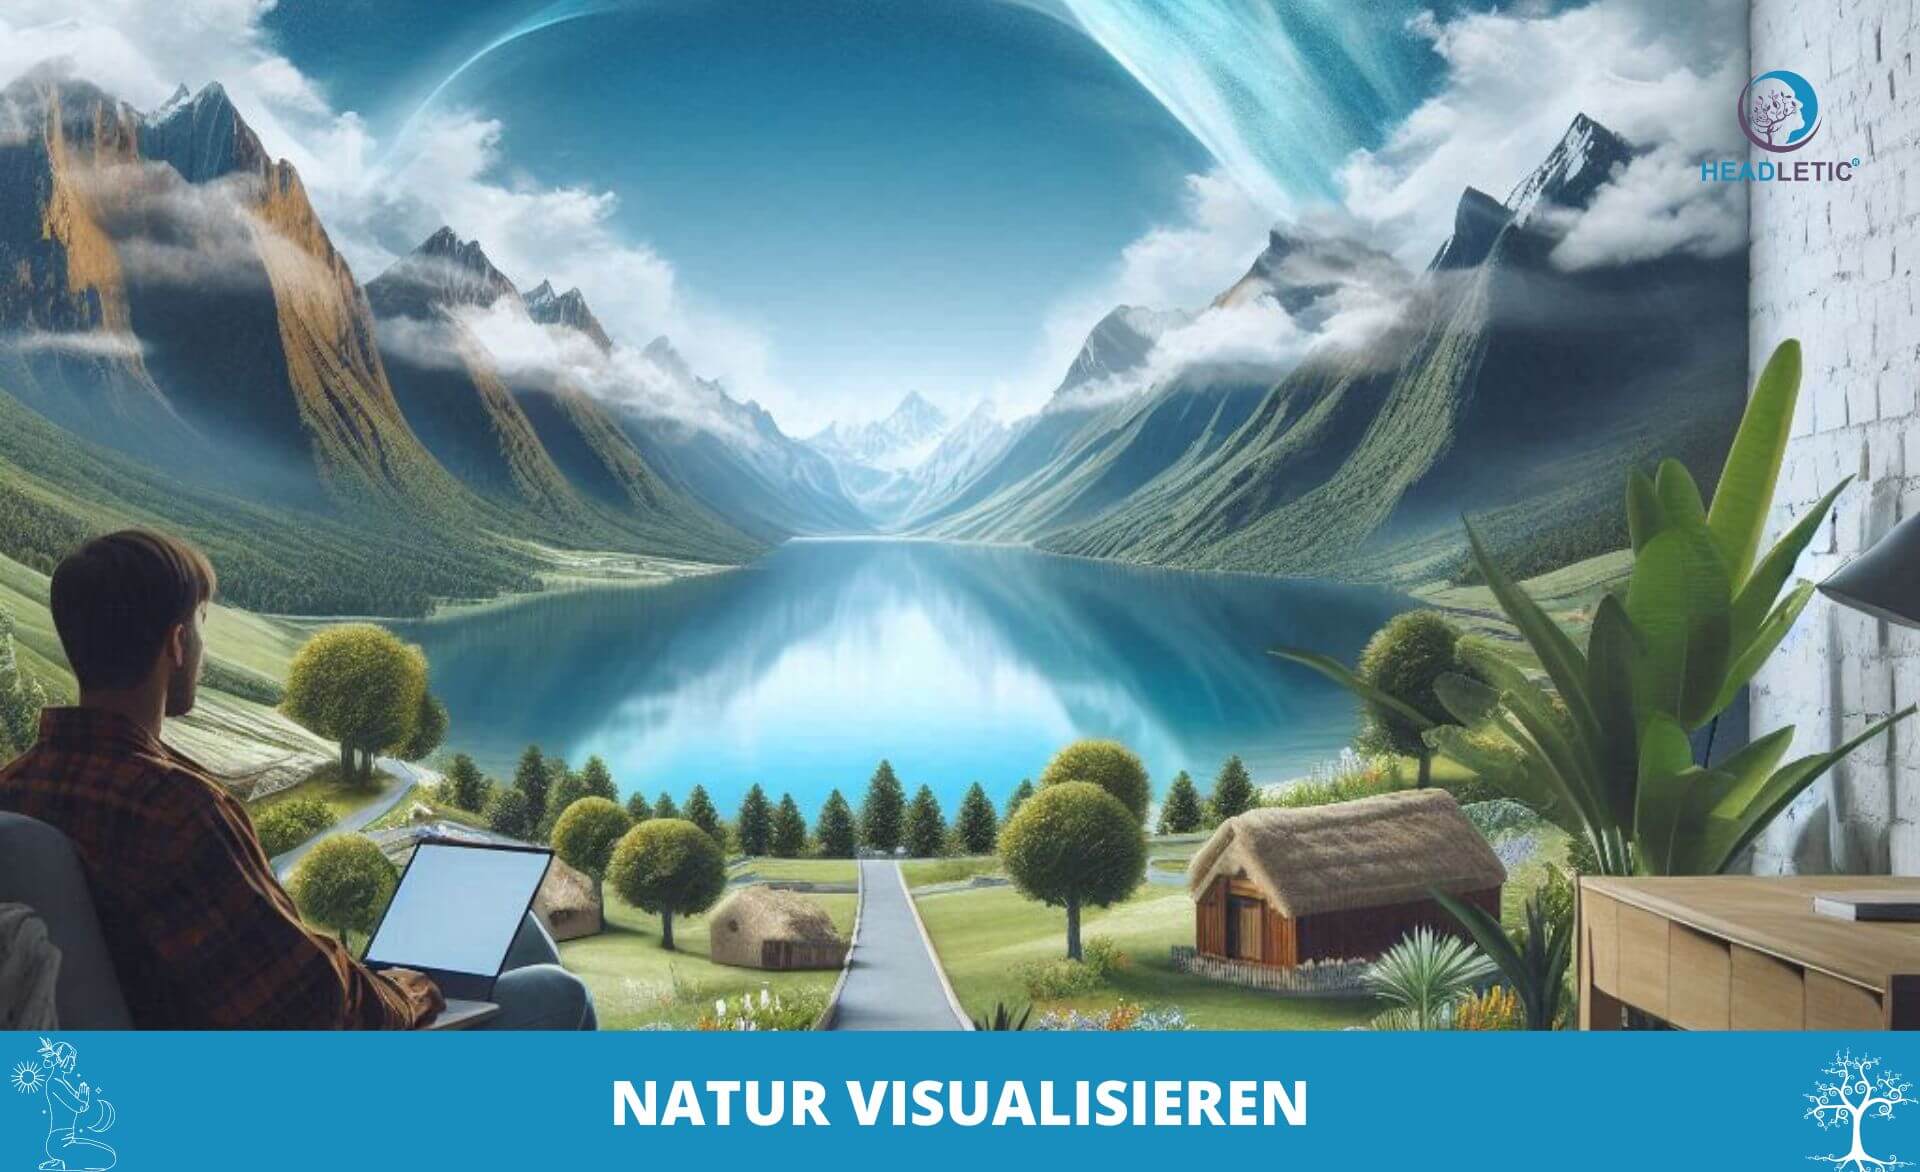 Eine Person sitzt mit einem Laptop vor einem großen Wandgemälde oder Fenster, das eine malerische Landschaft mit einem See, Bergen und kleinen Häusern zeigt. Der Text unten lautet „NATUR VISUALISIEREN.